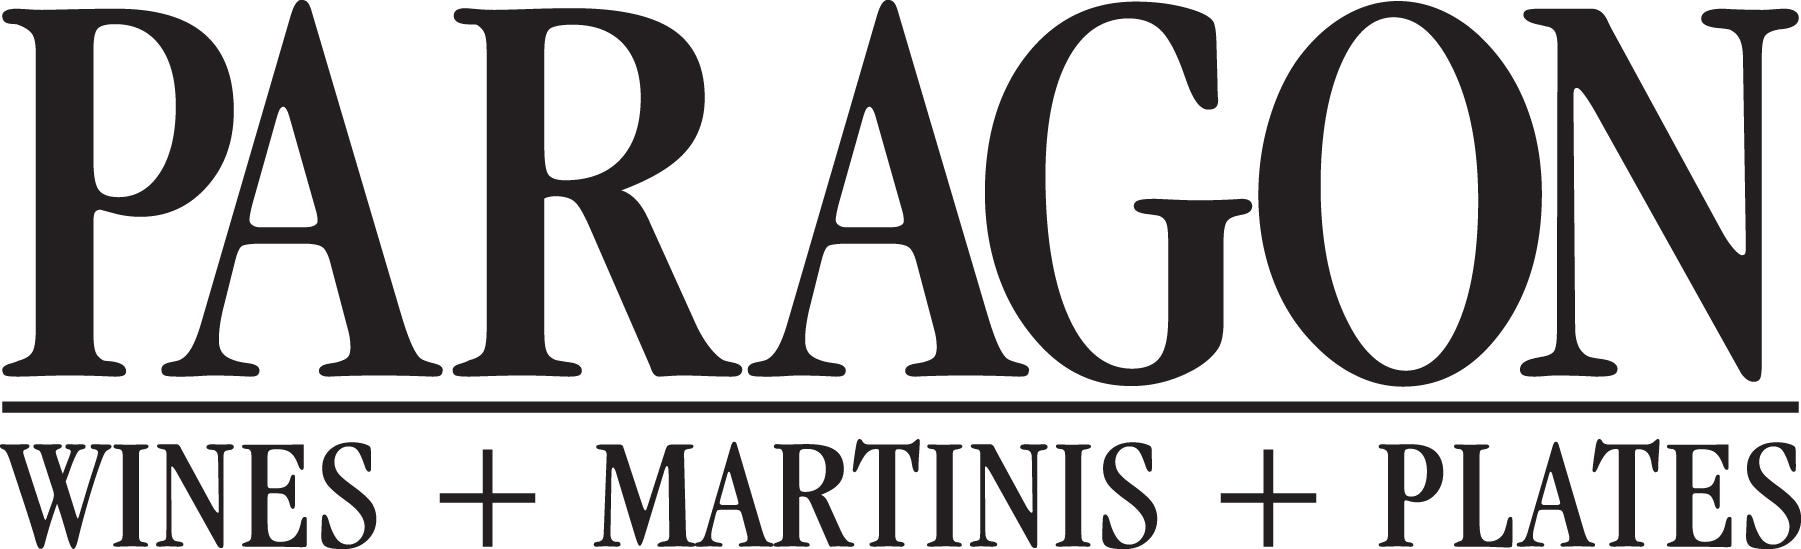 paragon_logo